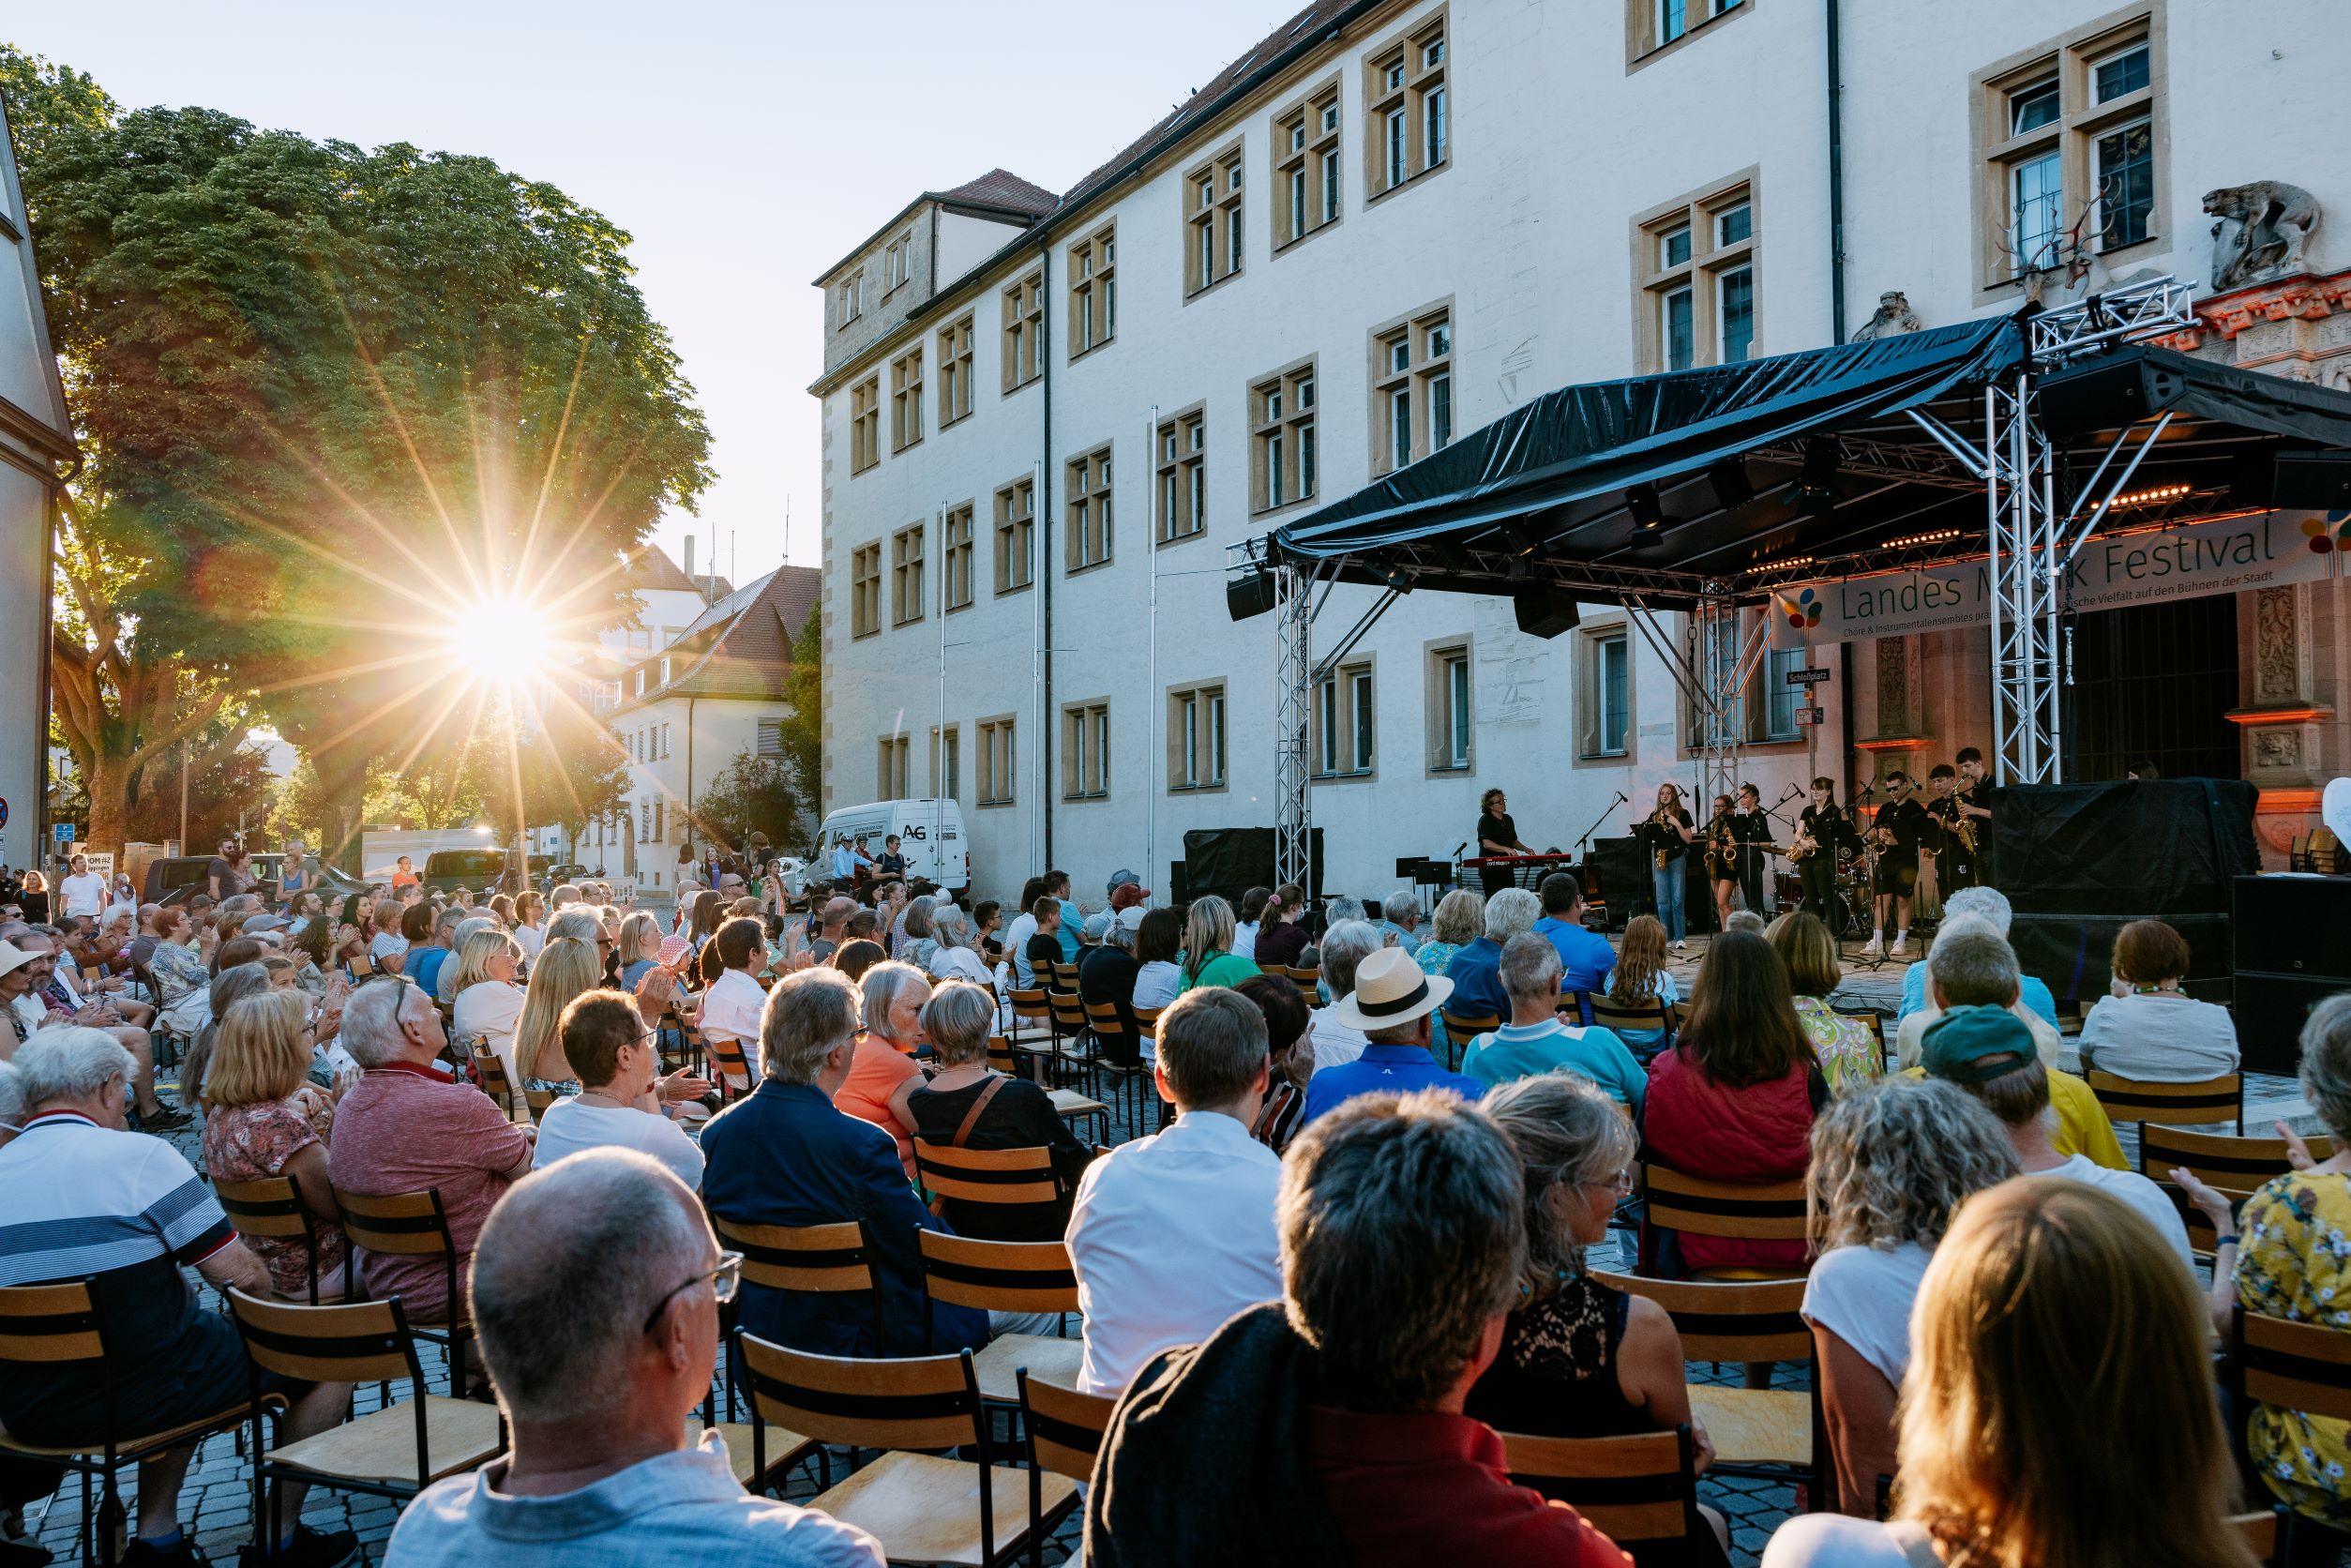 Landes-Musik-Festival am 2. Juli in Göppingen